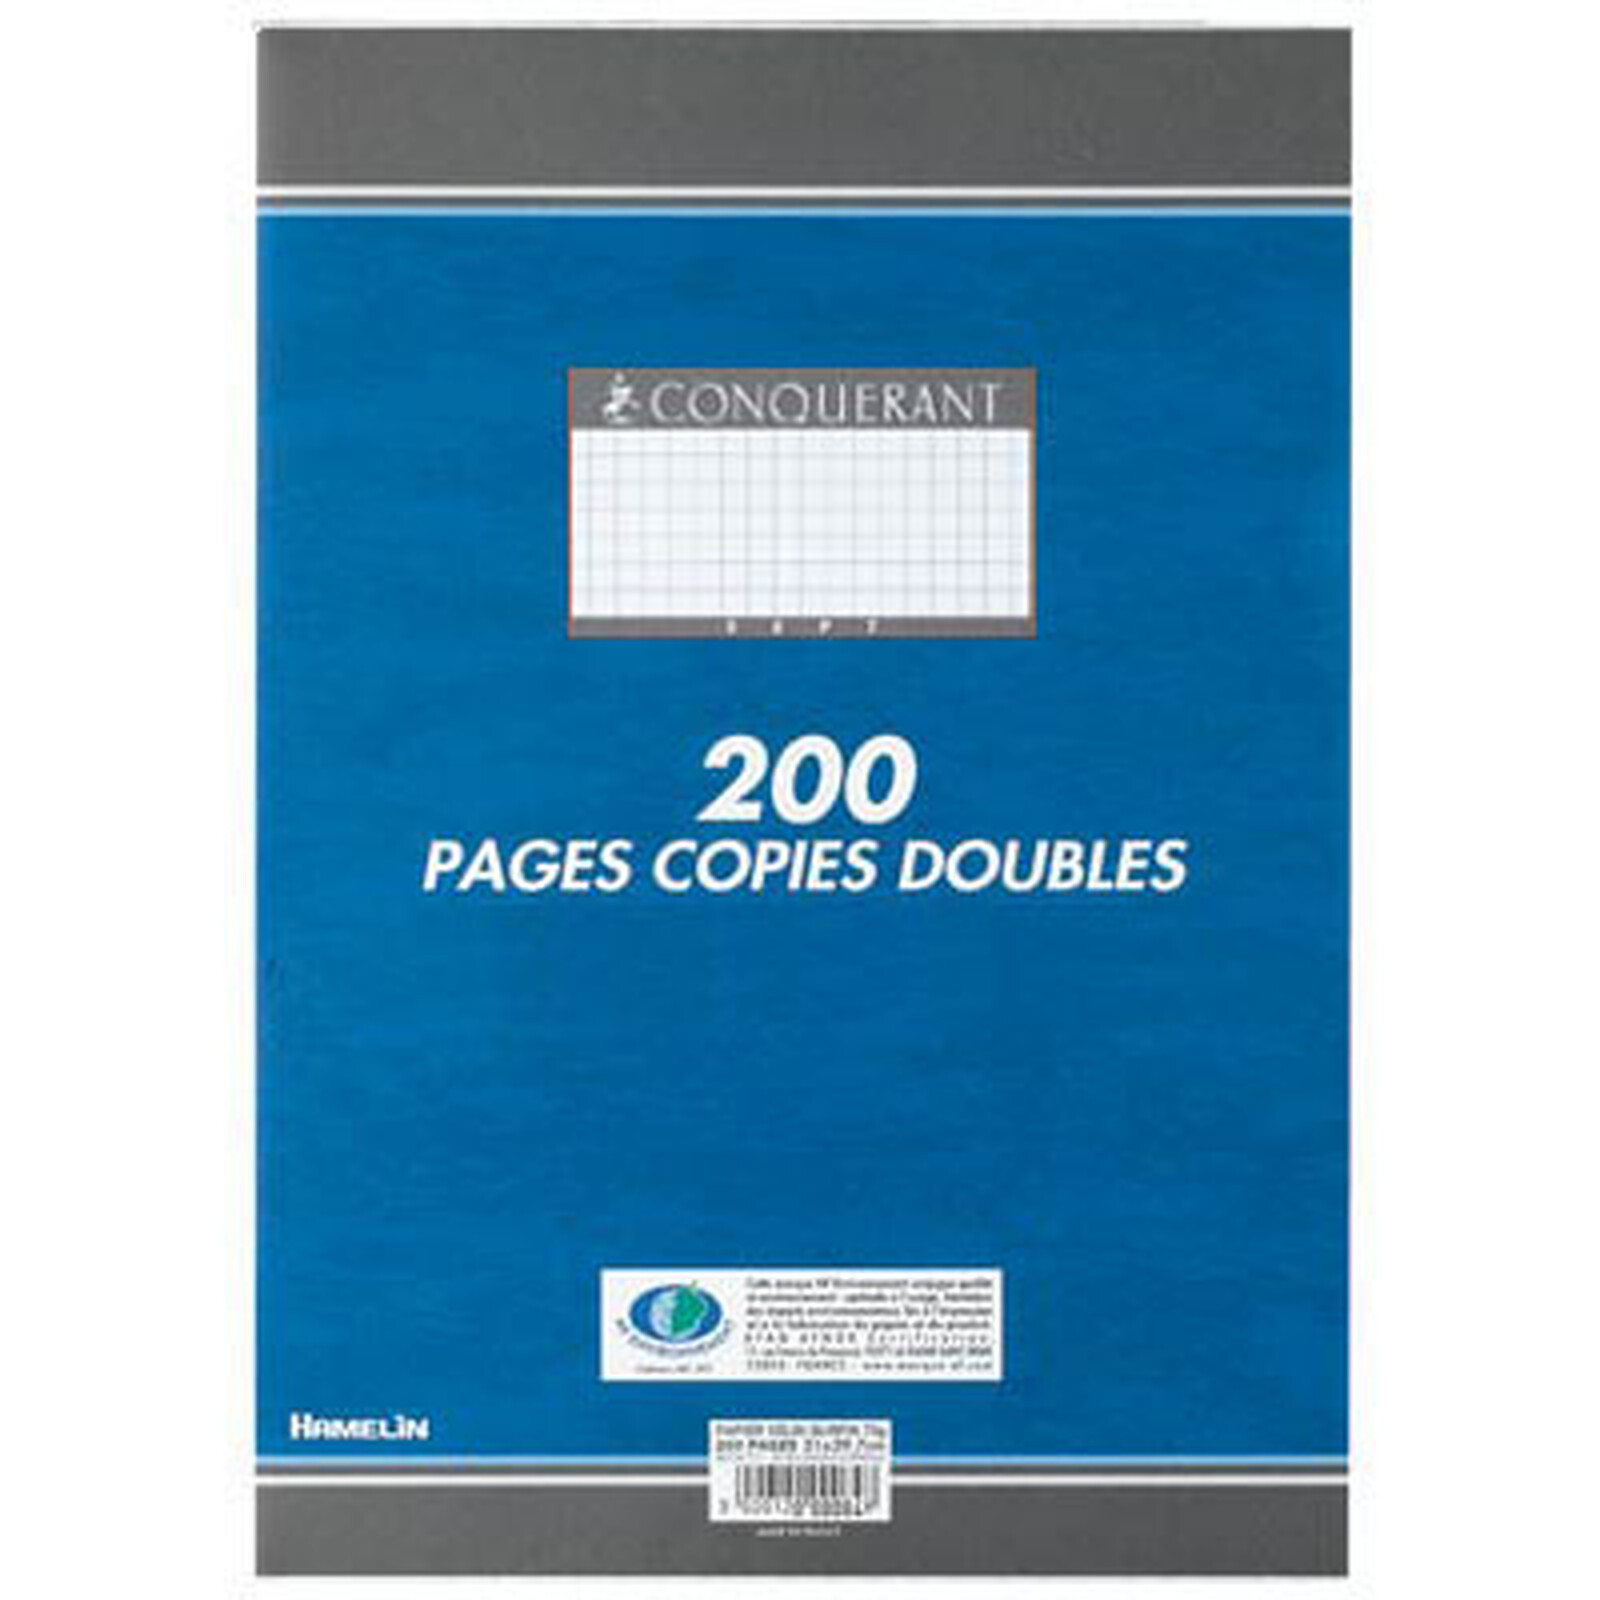 Conquerant 200 pages copies doubles grands carreaux Séyès A4 - Papier  spécifique - LDLC